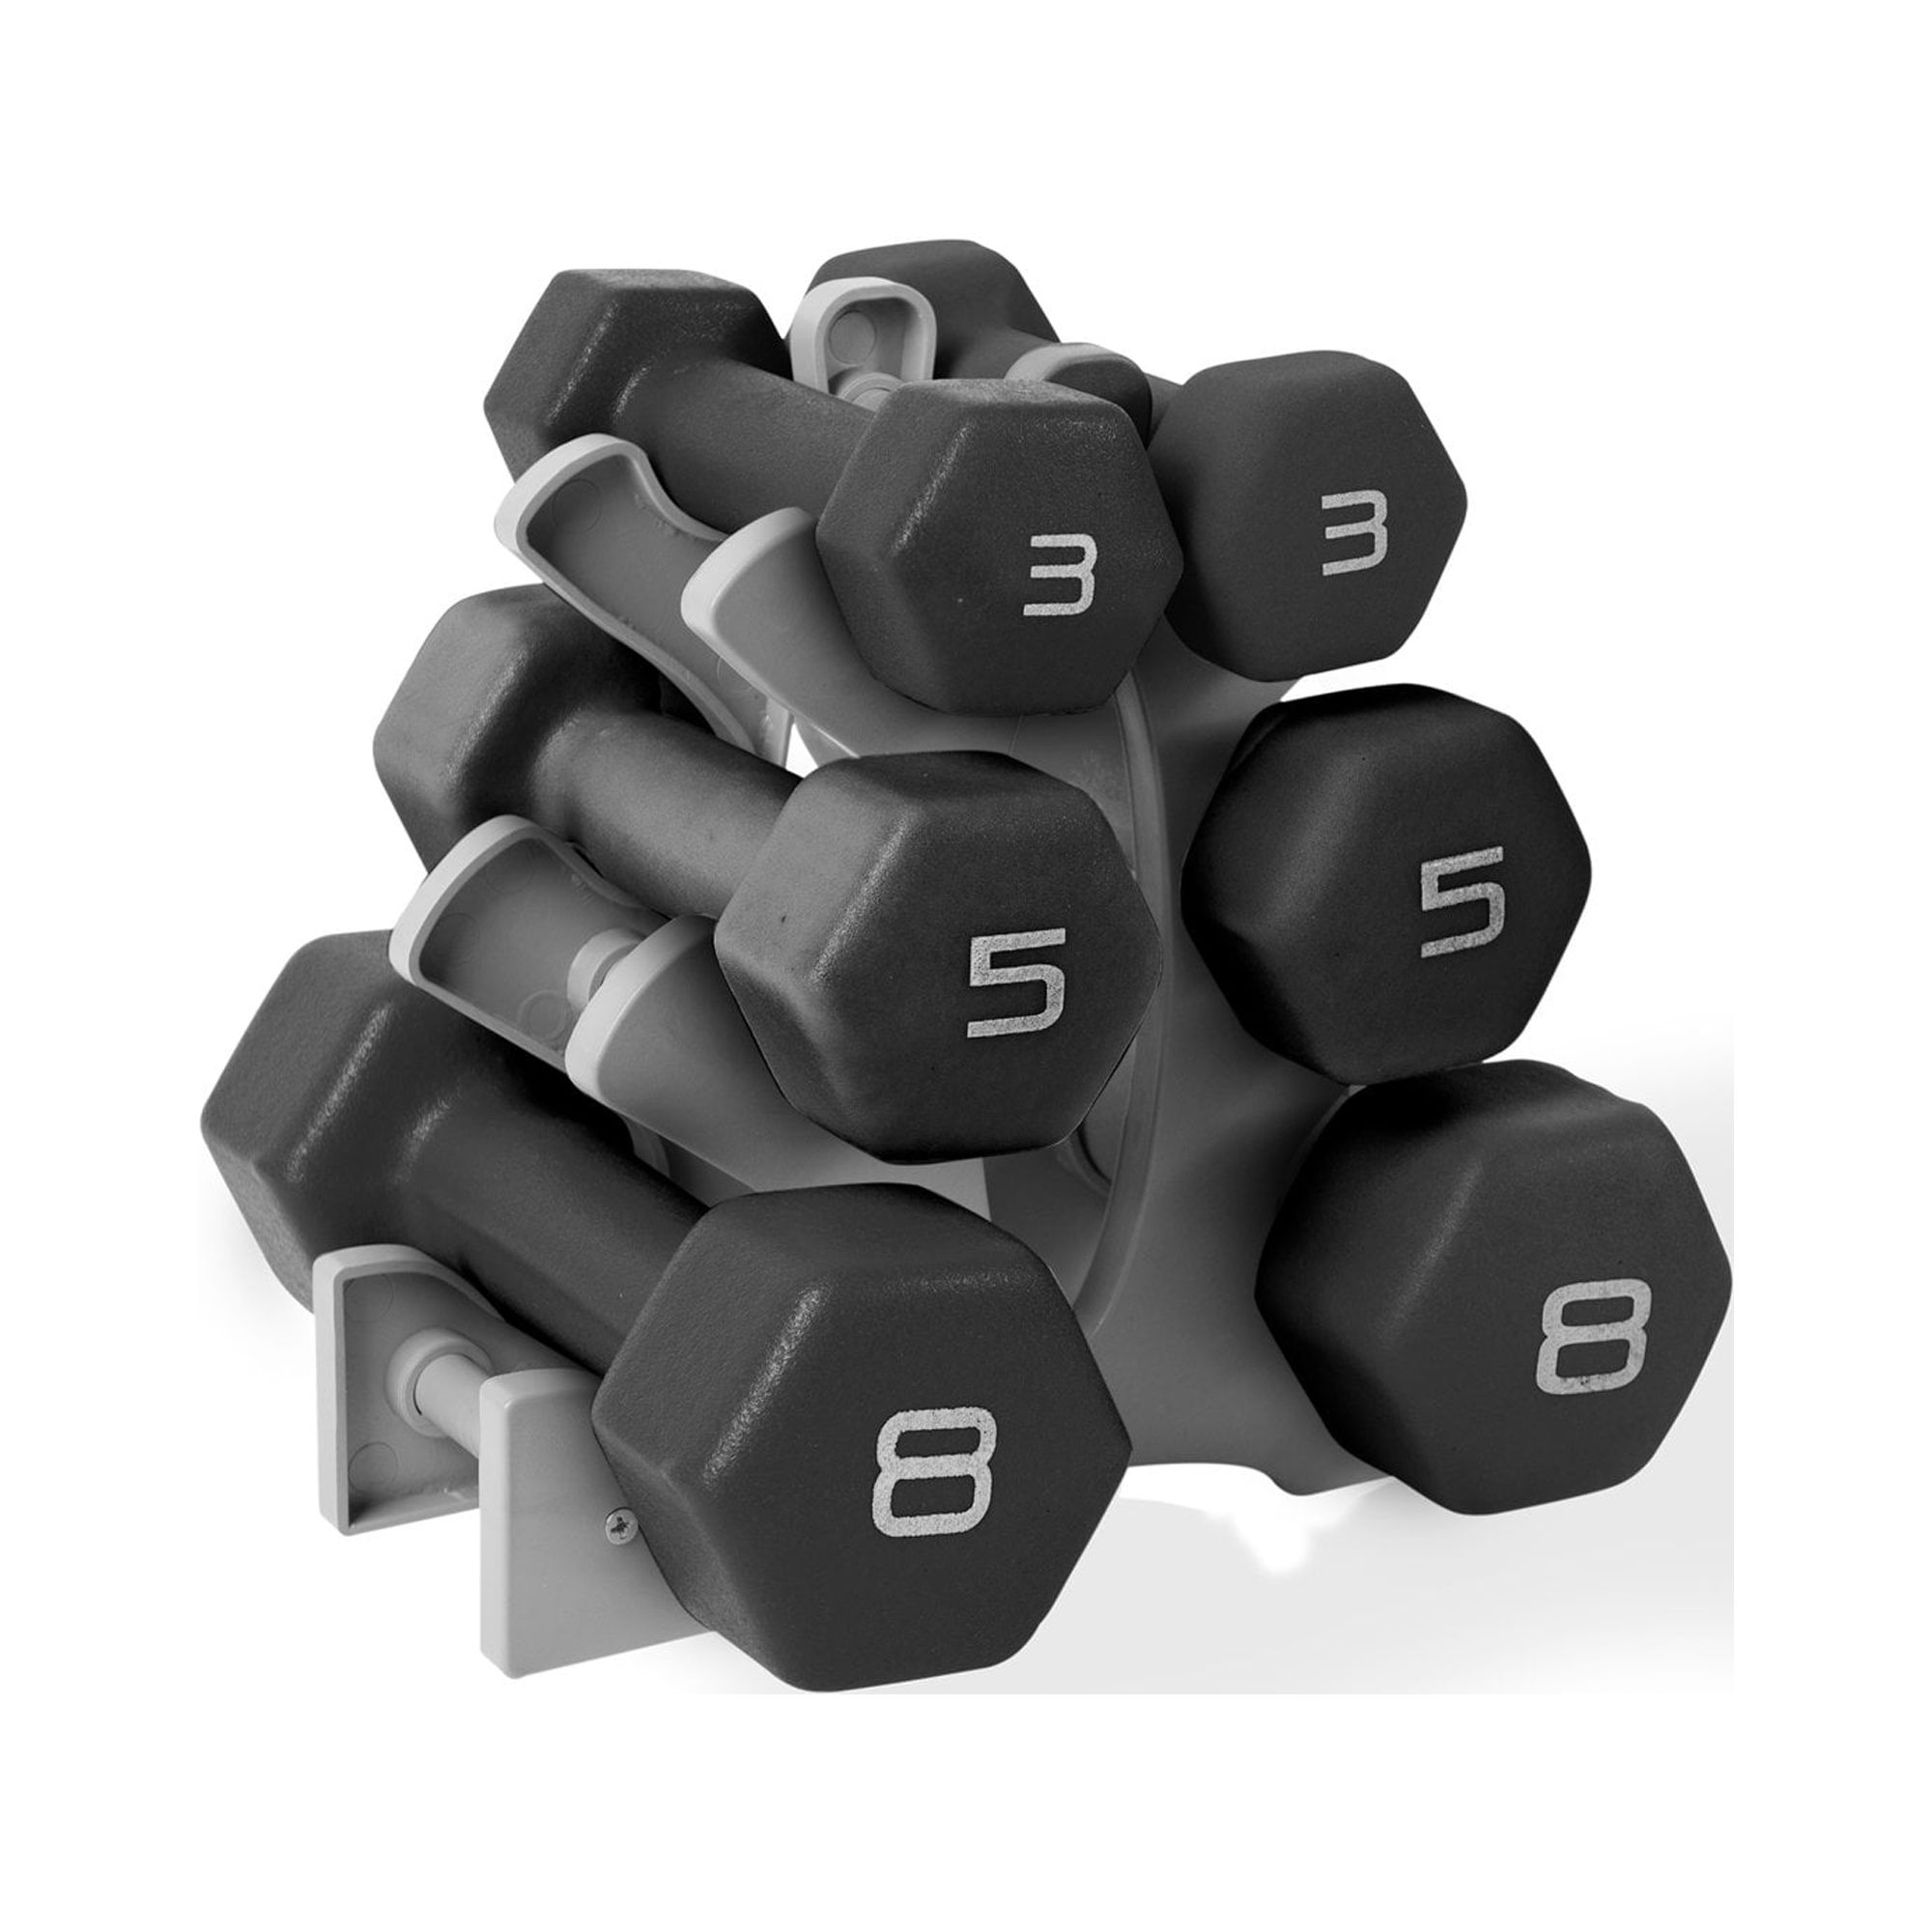 CAP Barbell 32 lb Neoprene Dumbbell Set with Rack, Black - image 1 of 5